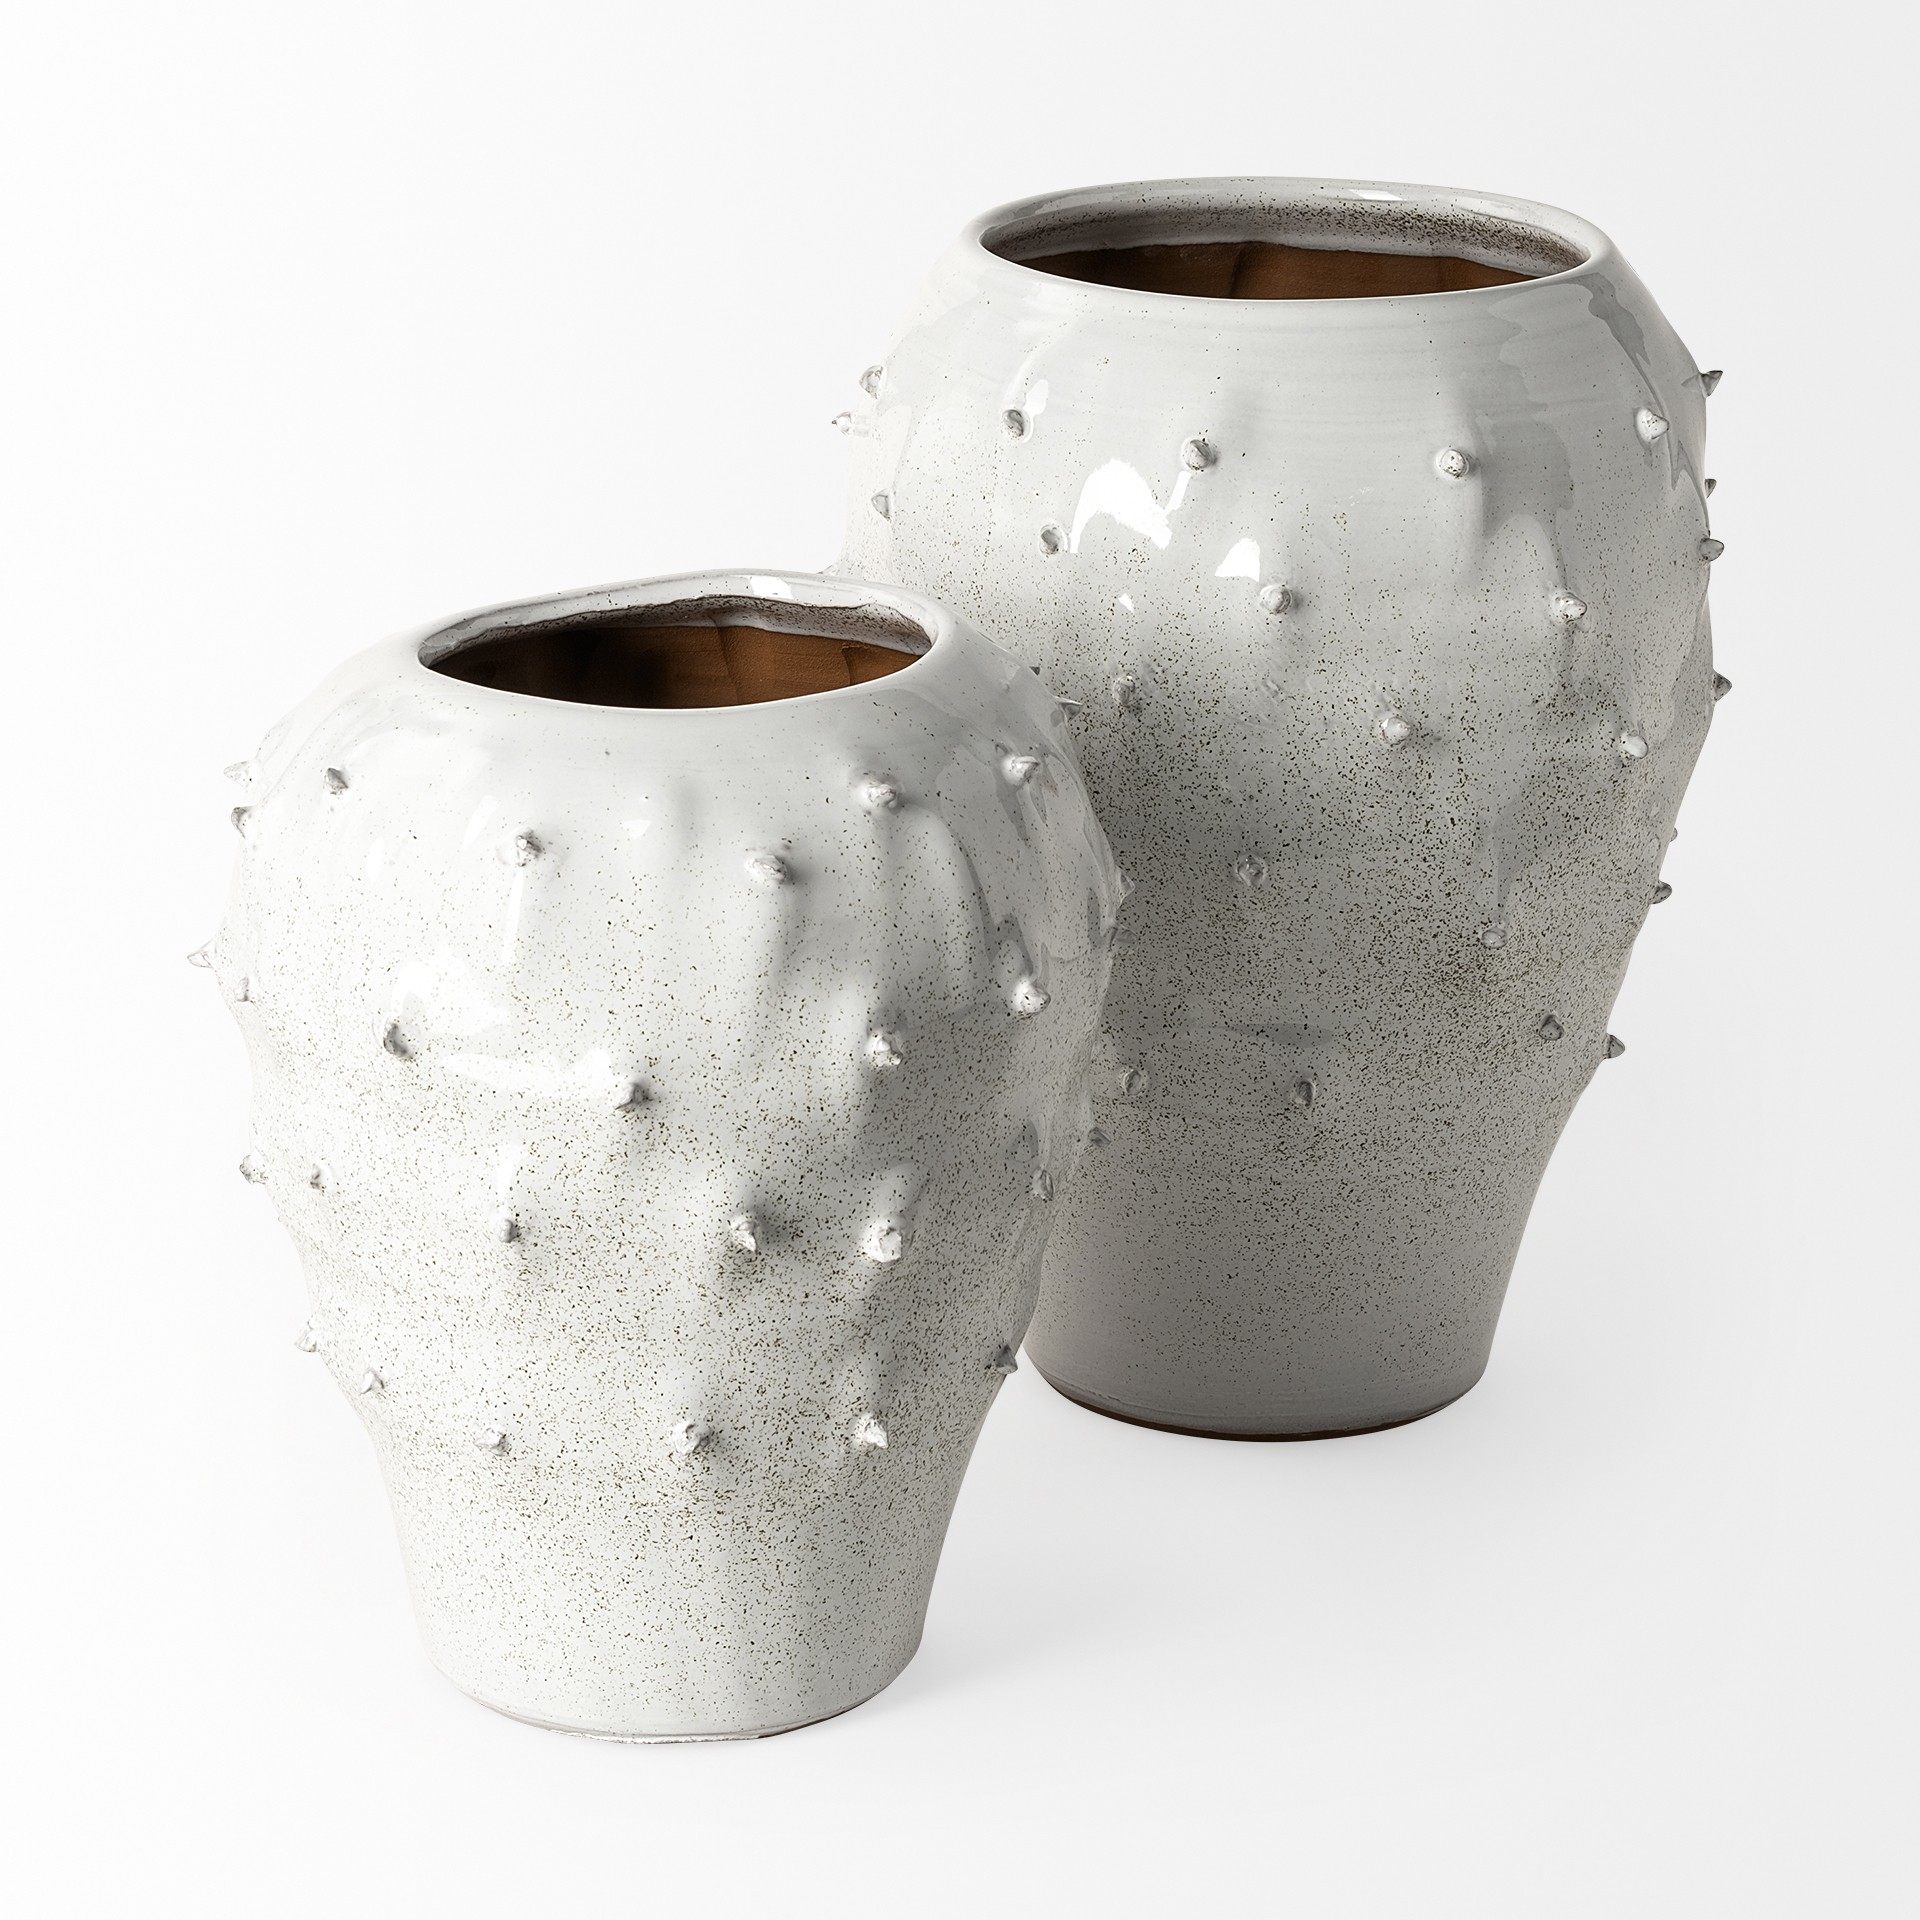 11' White Spiked Organic Glaze Large Mouth Ceramic Vase